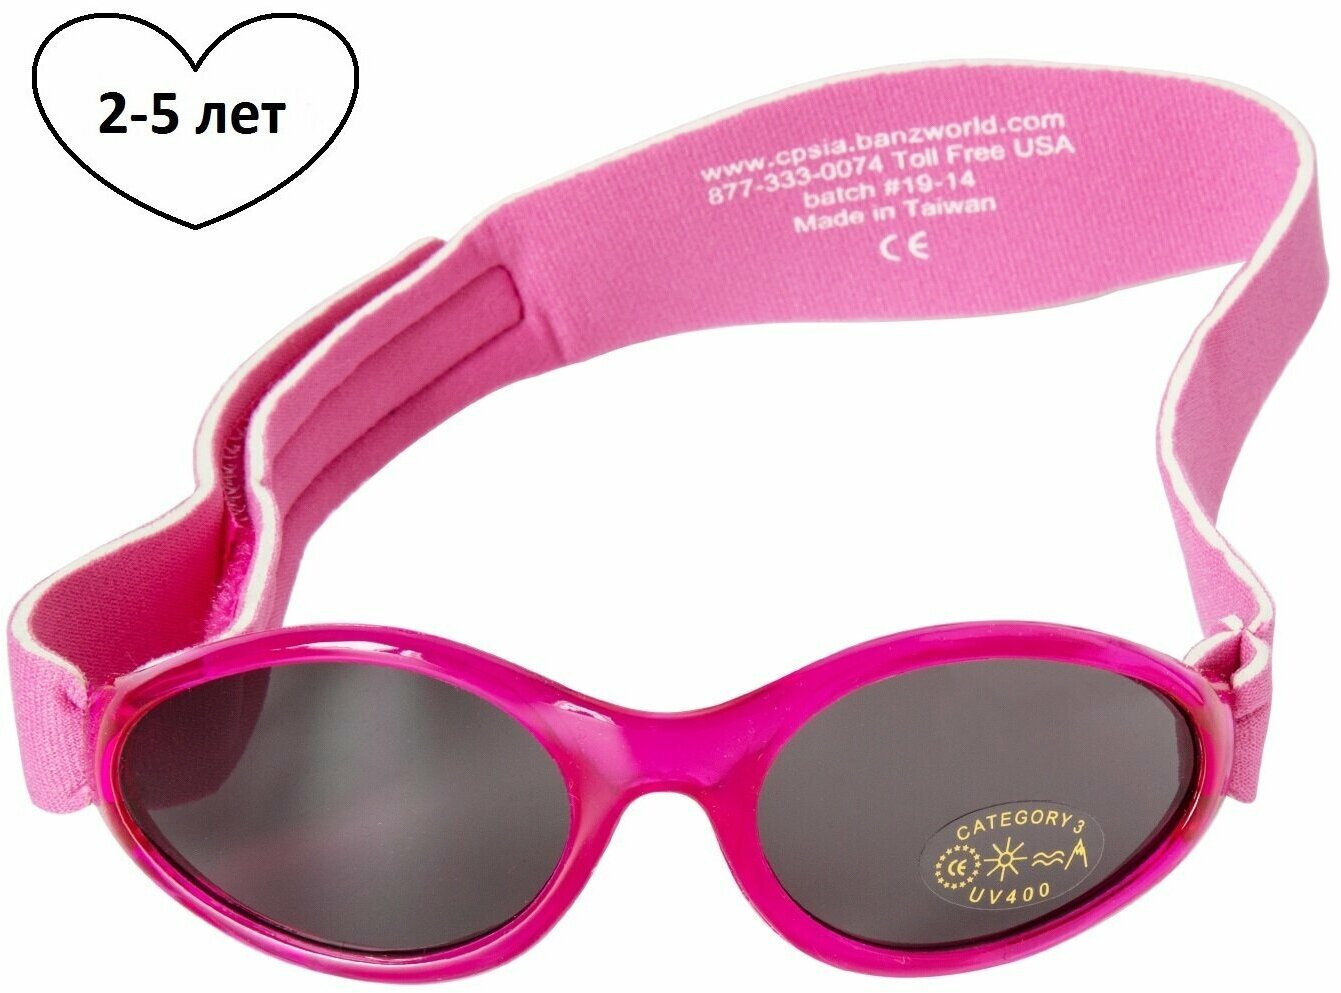 Солнцезащитные очки детские Baby Banz 2-5 лет, розовые